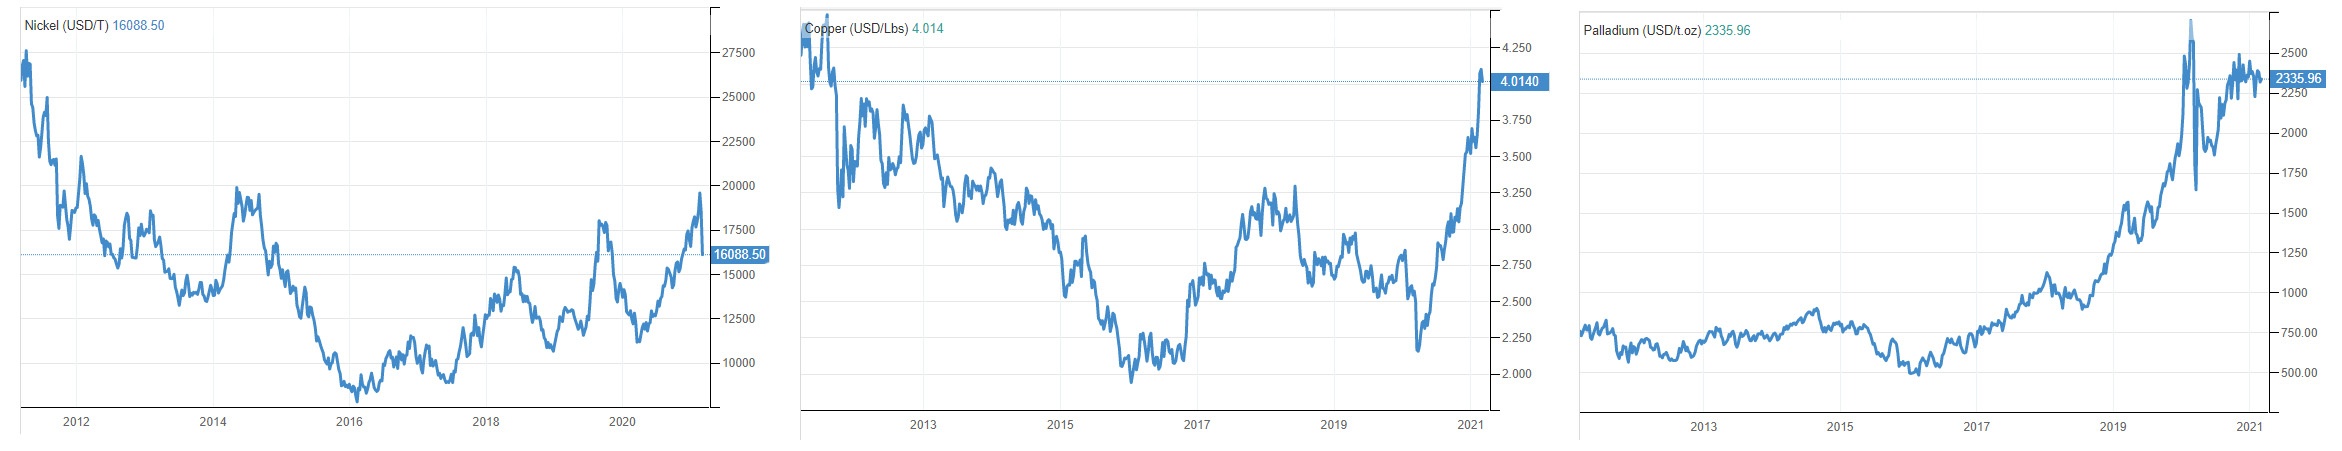 Динамика цен на основные металлы Норникеля за 10 лет